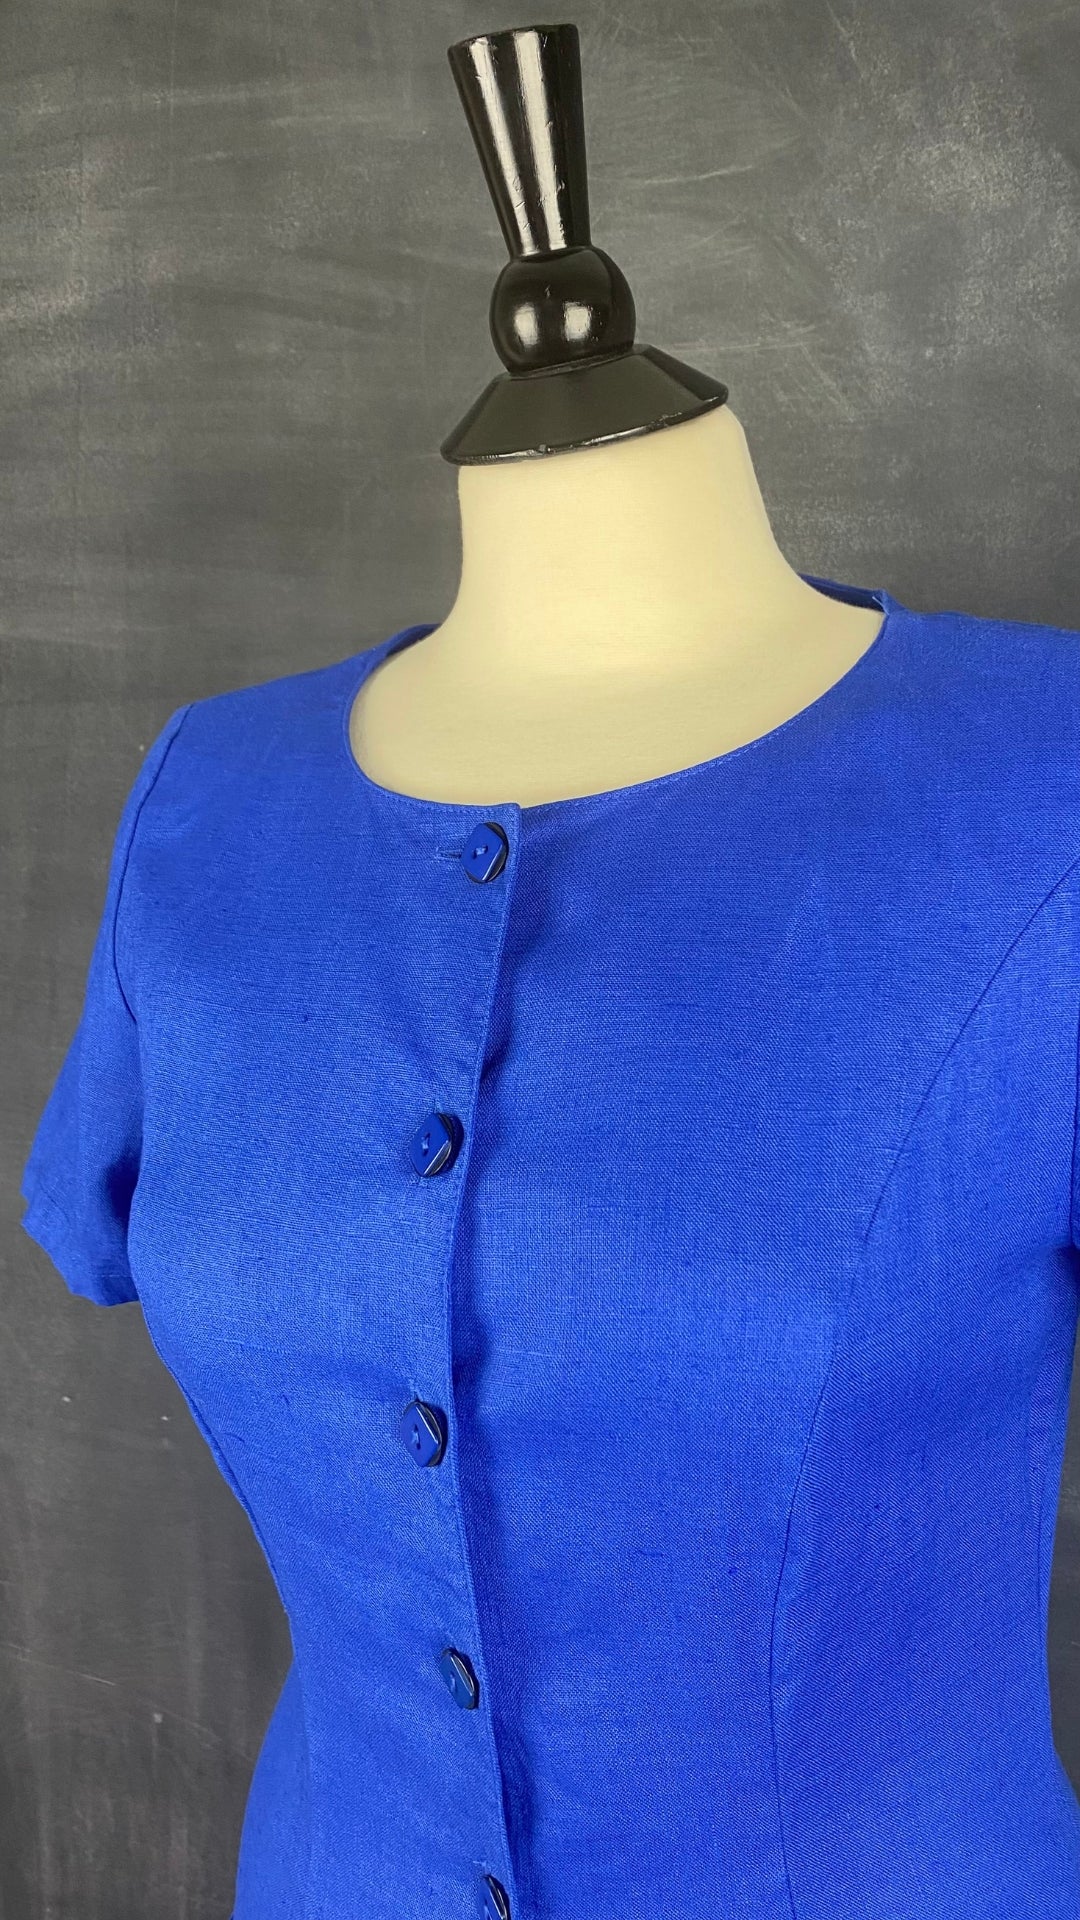 Robe bleue boutonnée en lin Steilmann, taille 6 (xs/s). Vue de l'encolure.